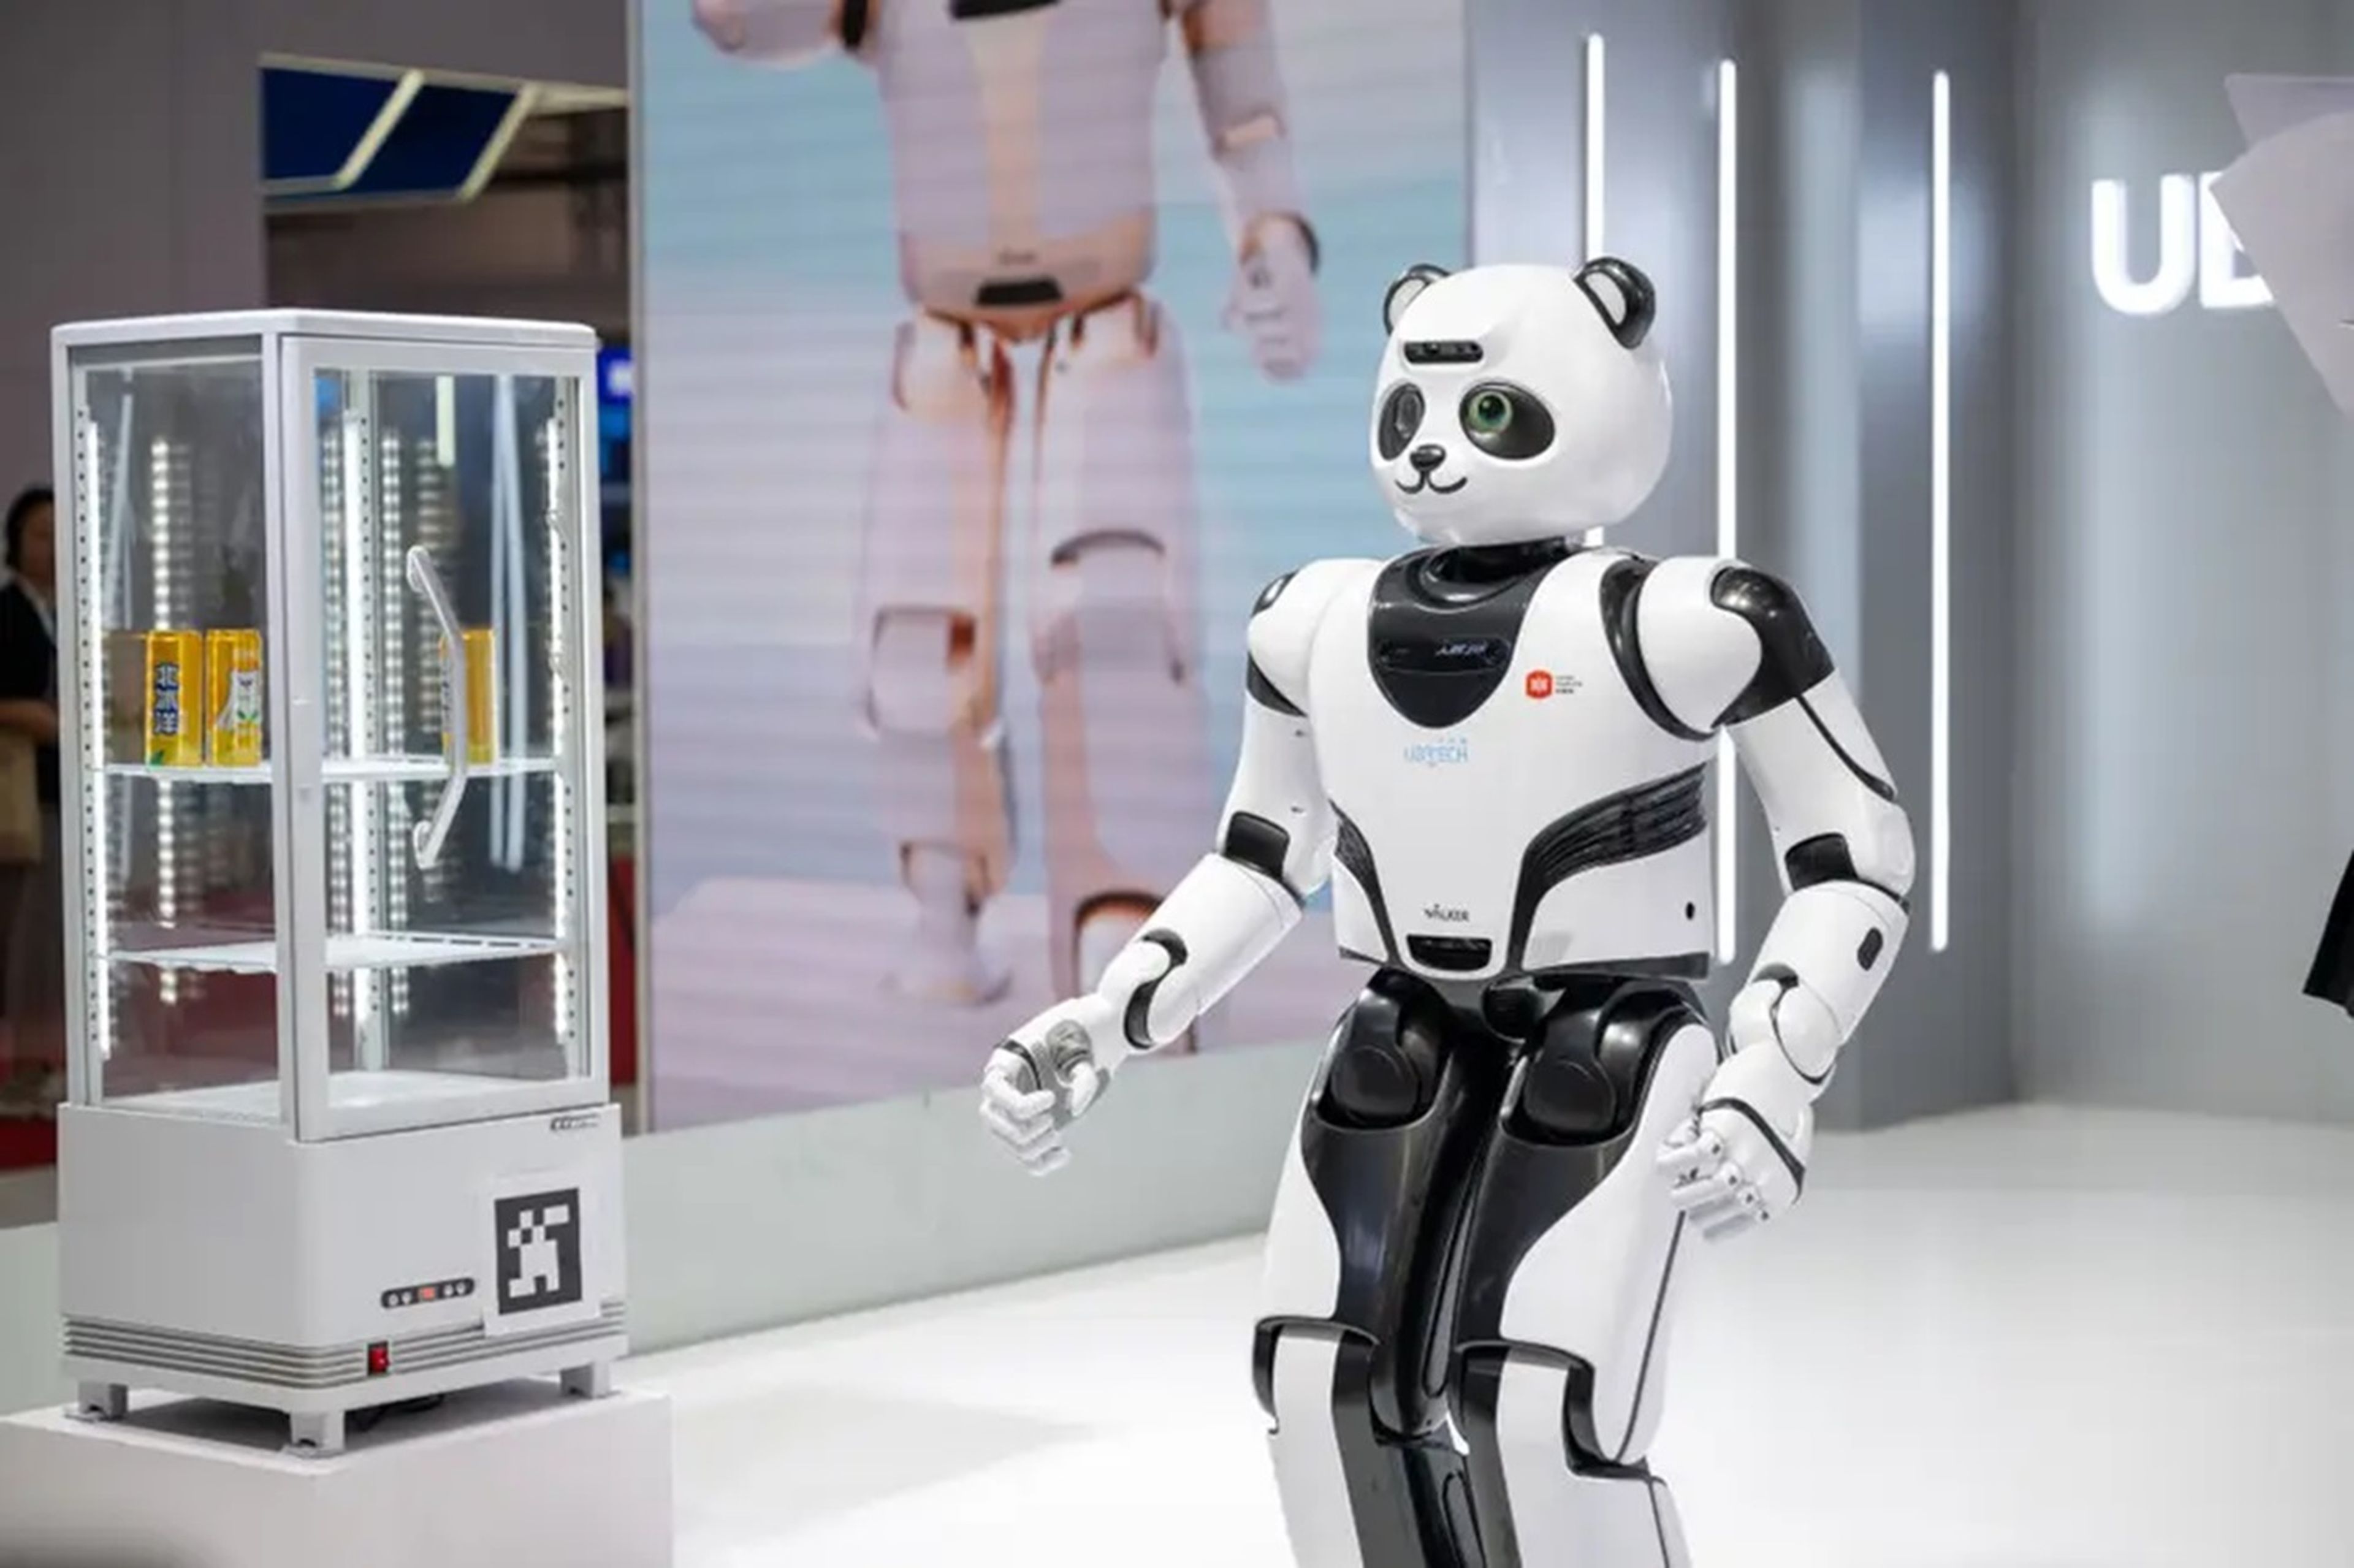 Ubtech ha desarrollado una gama de robots humanoides, entre ellos el "Robot Panda".